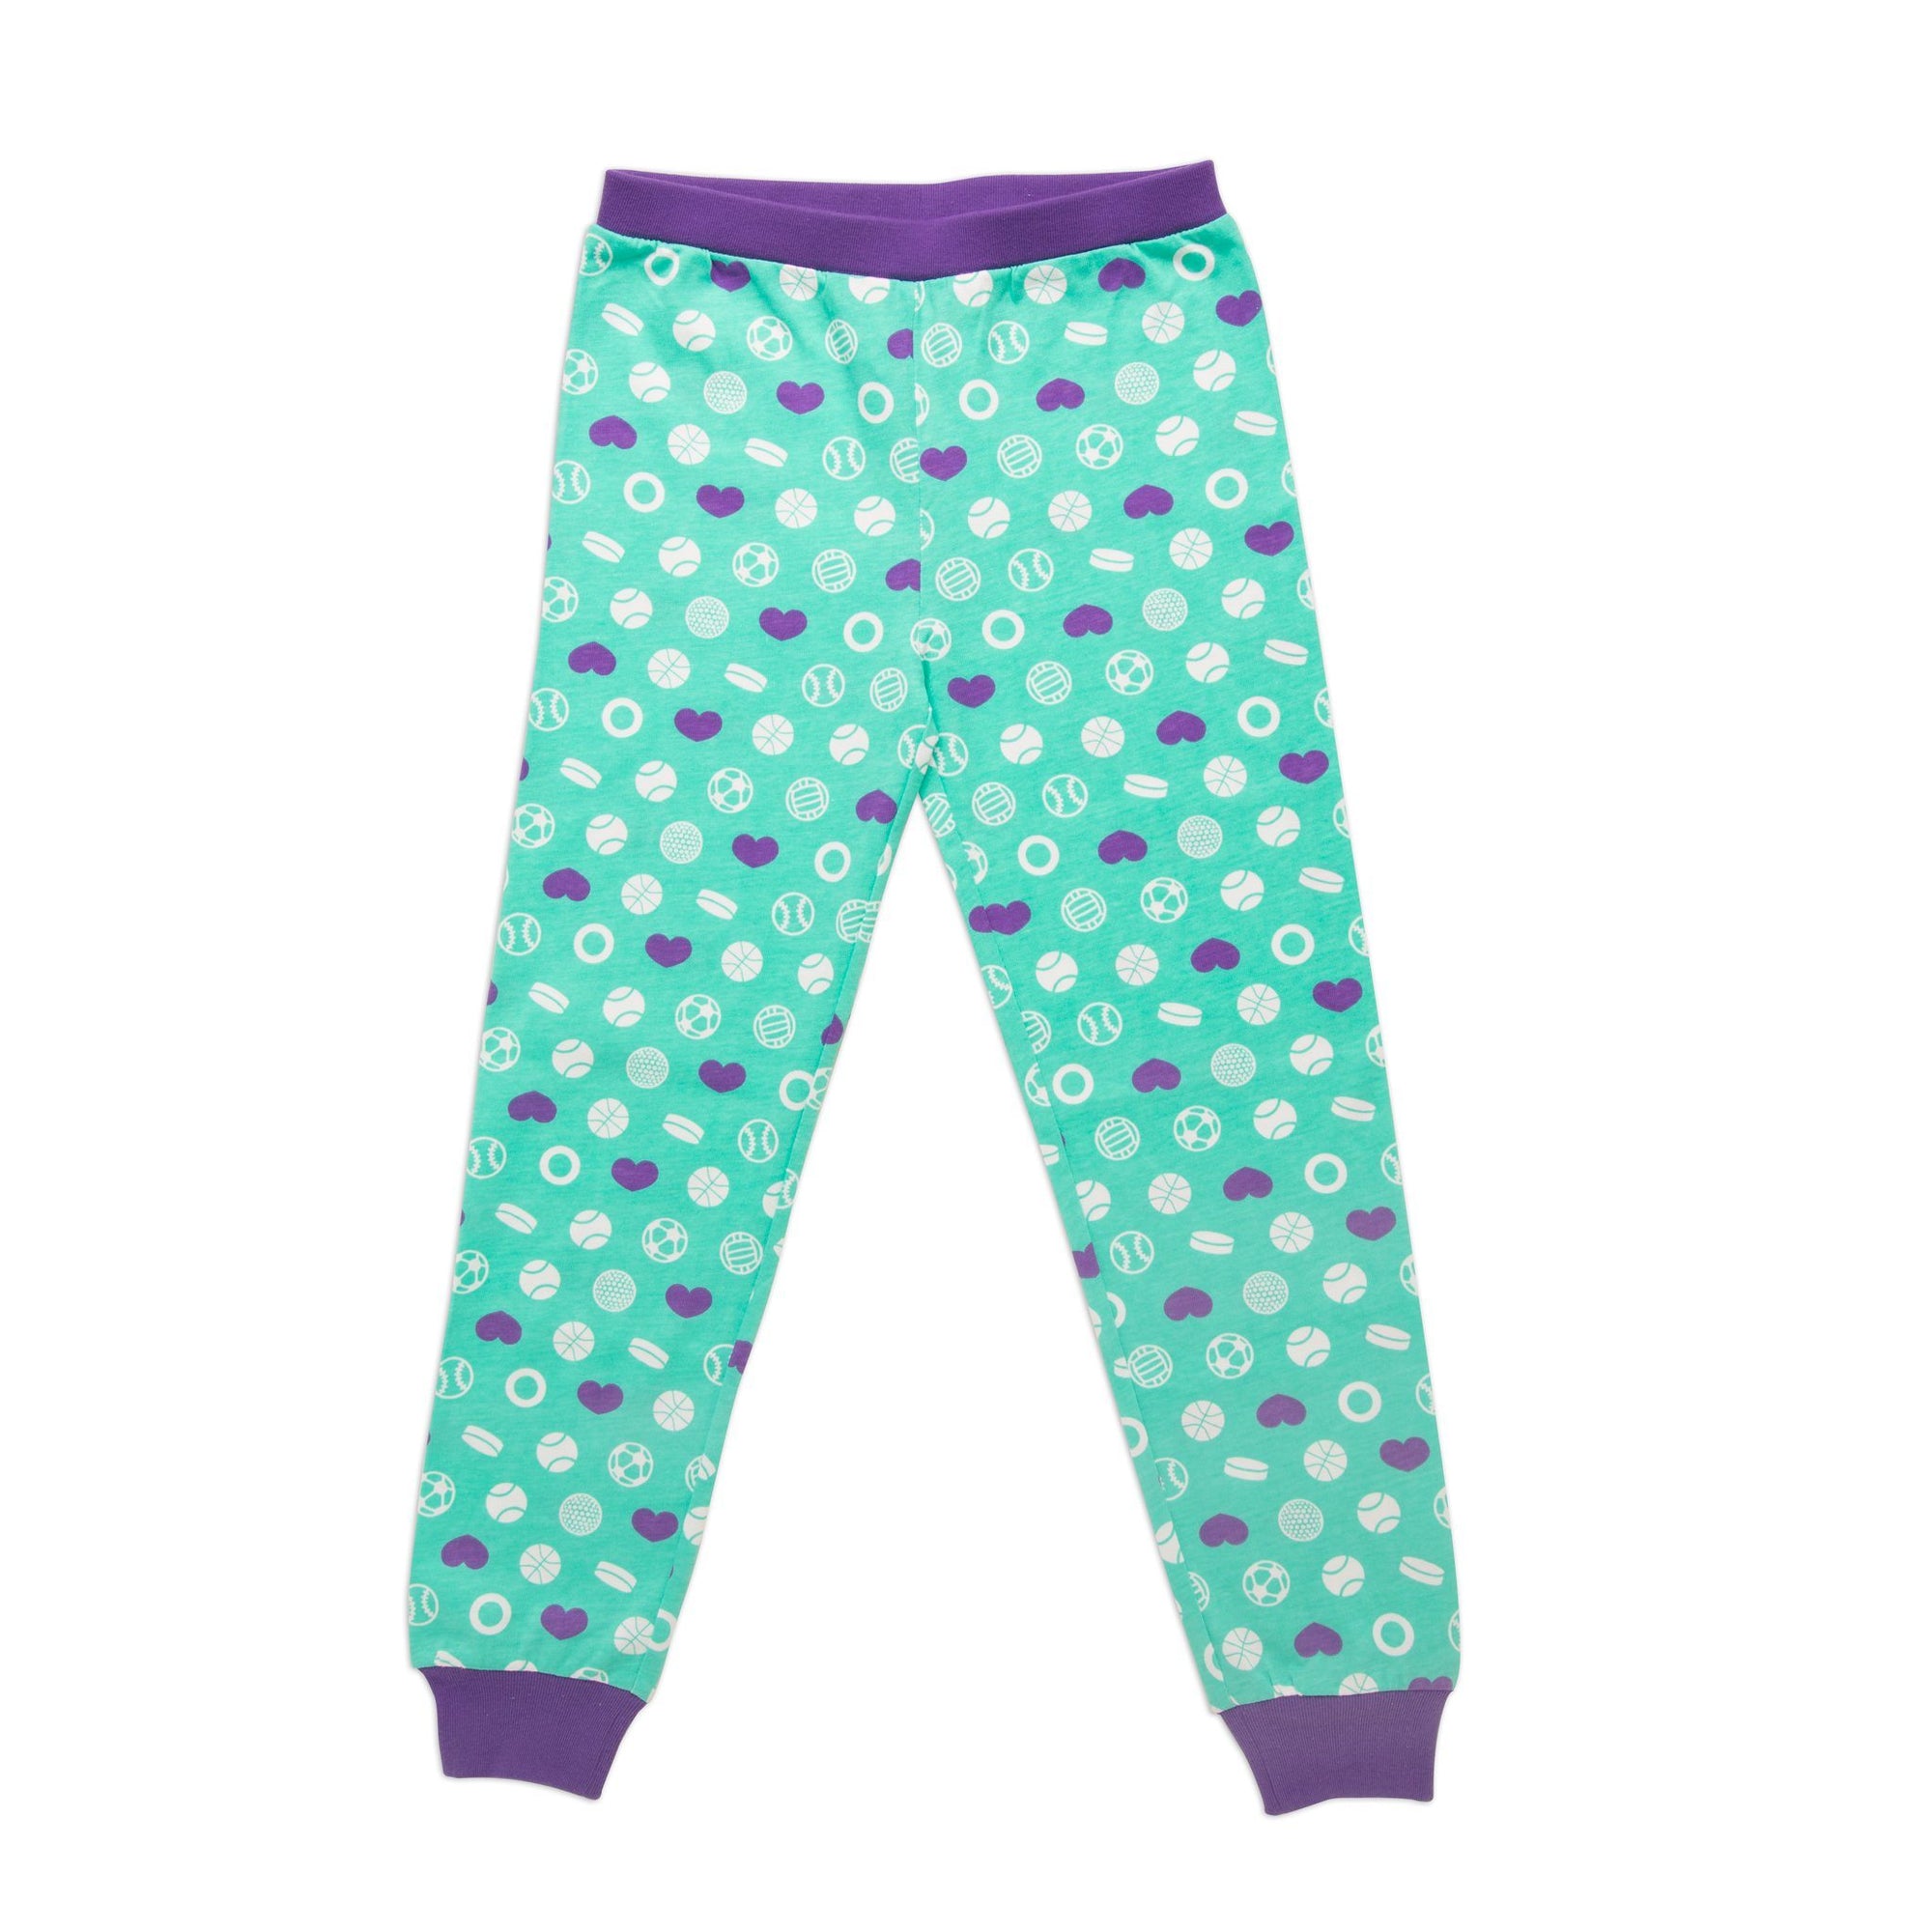 Maplelea  Dream Team Pyjamas for Girls